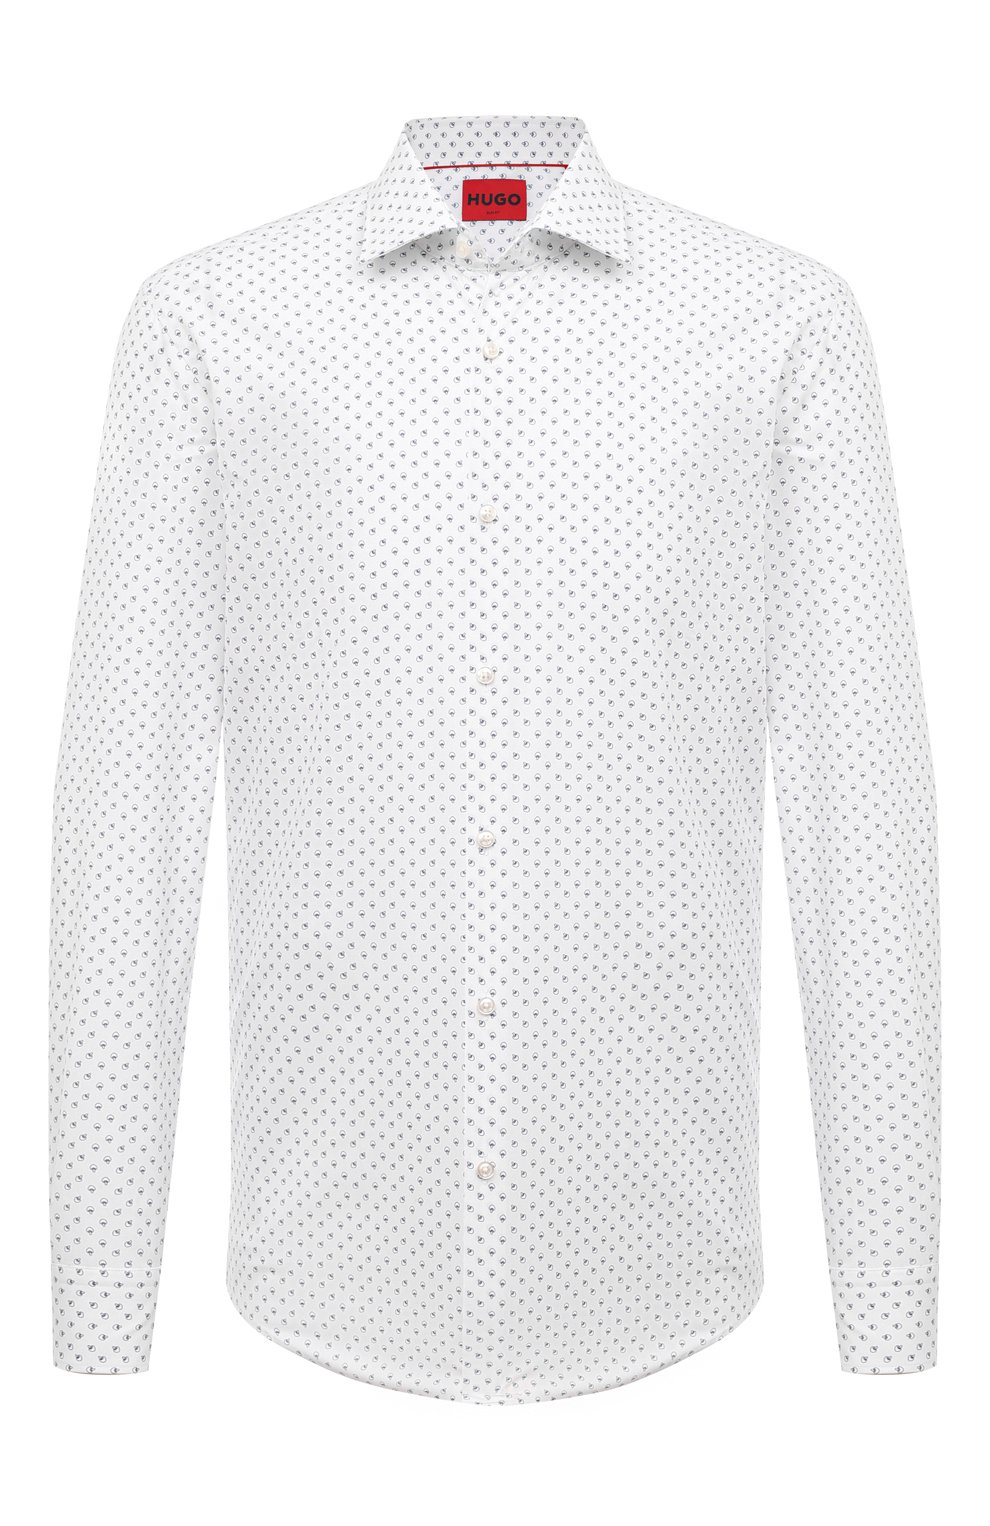 Рубашки HUGO, Хлопковая рубашка HUGO, Индия, Белый, Хлопок: 100%;, 13383672  - купить